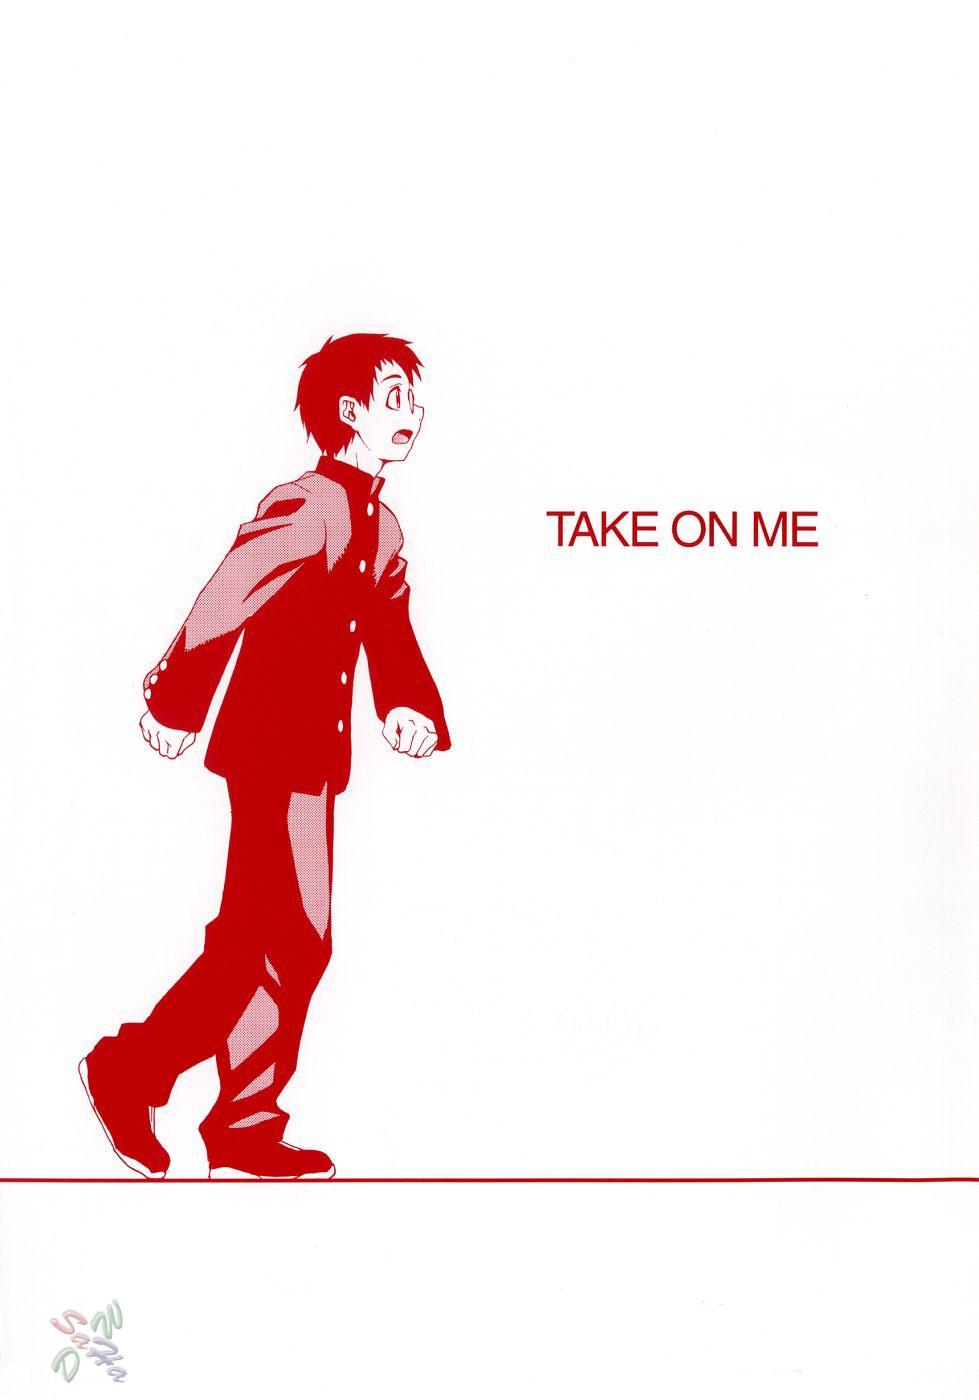 Take On Me 5